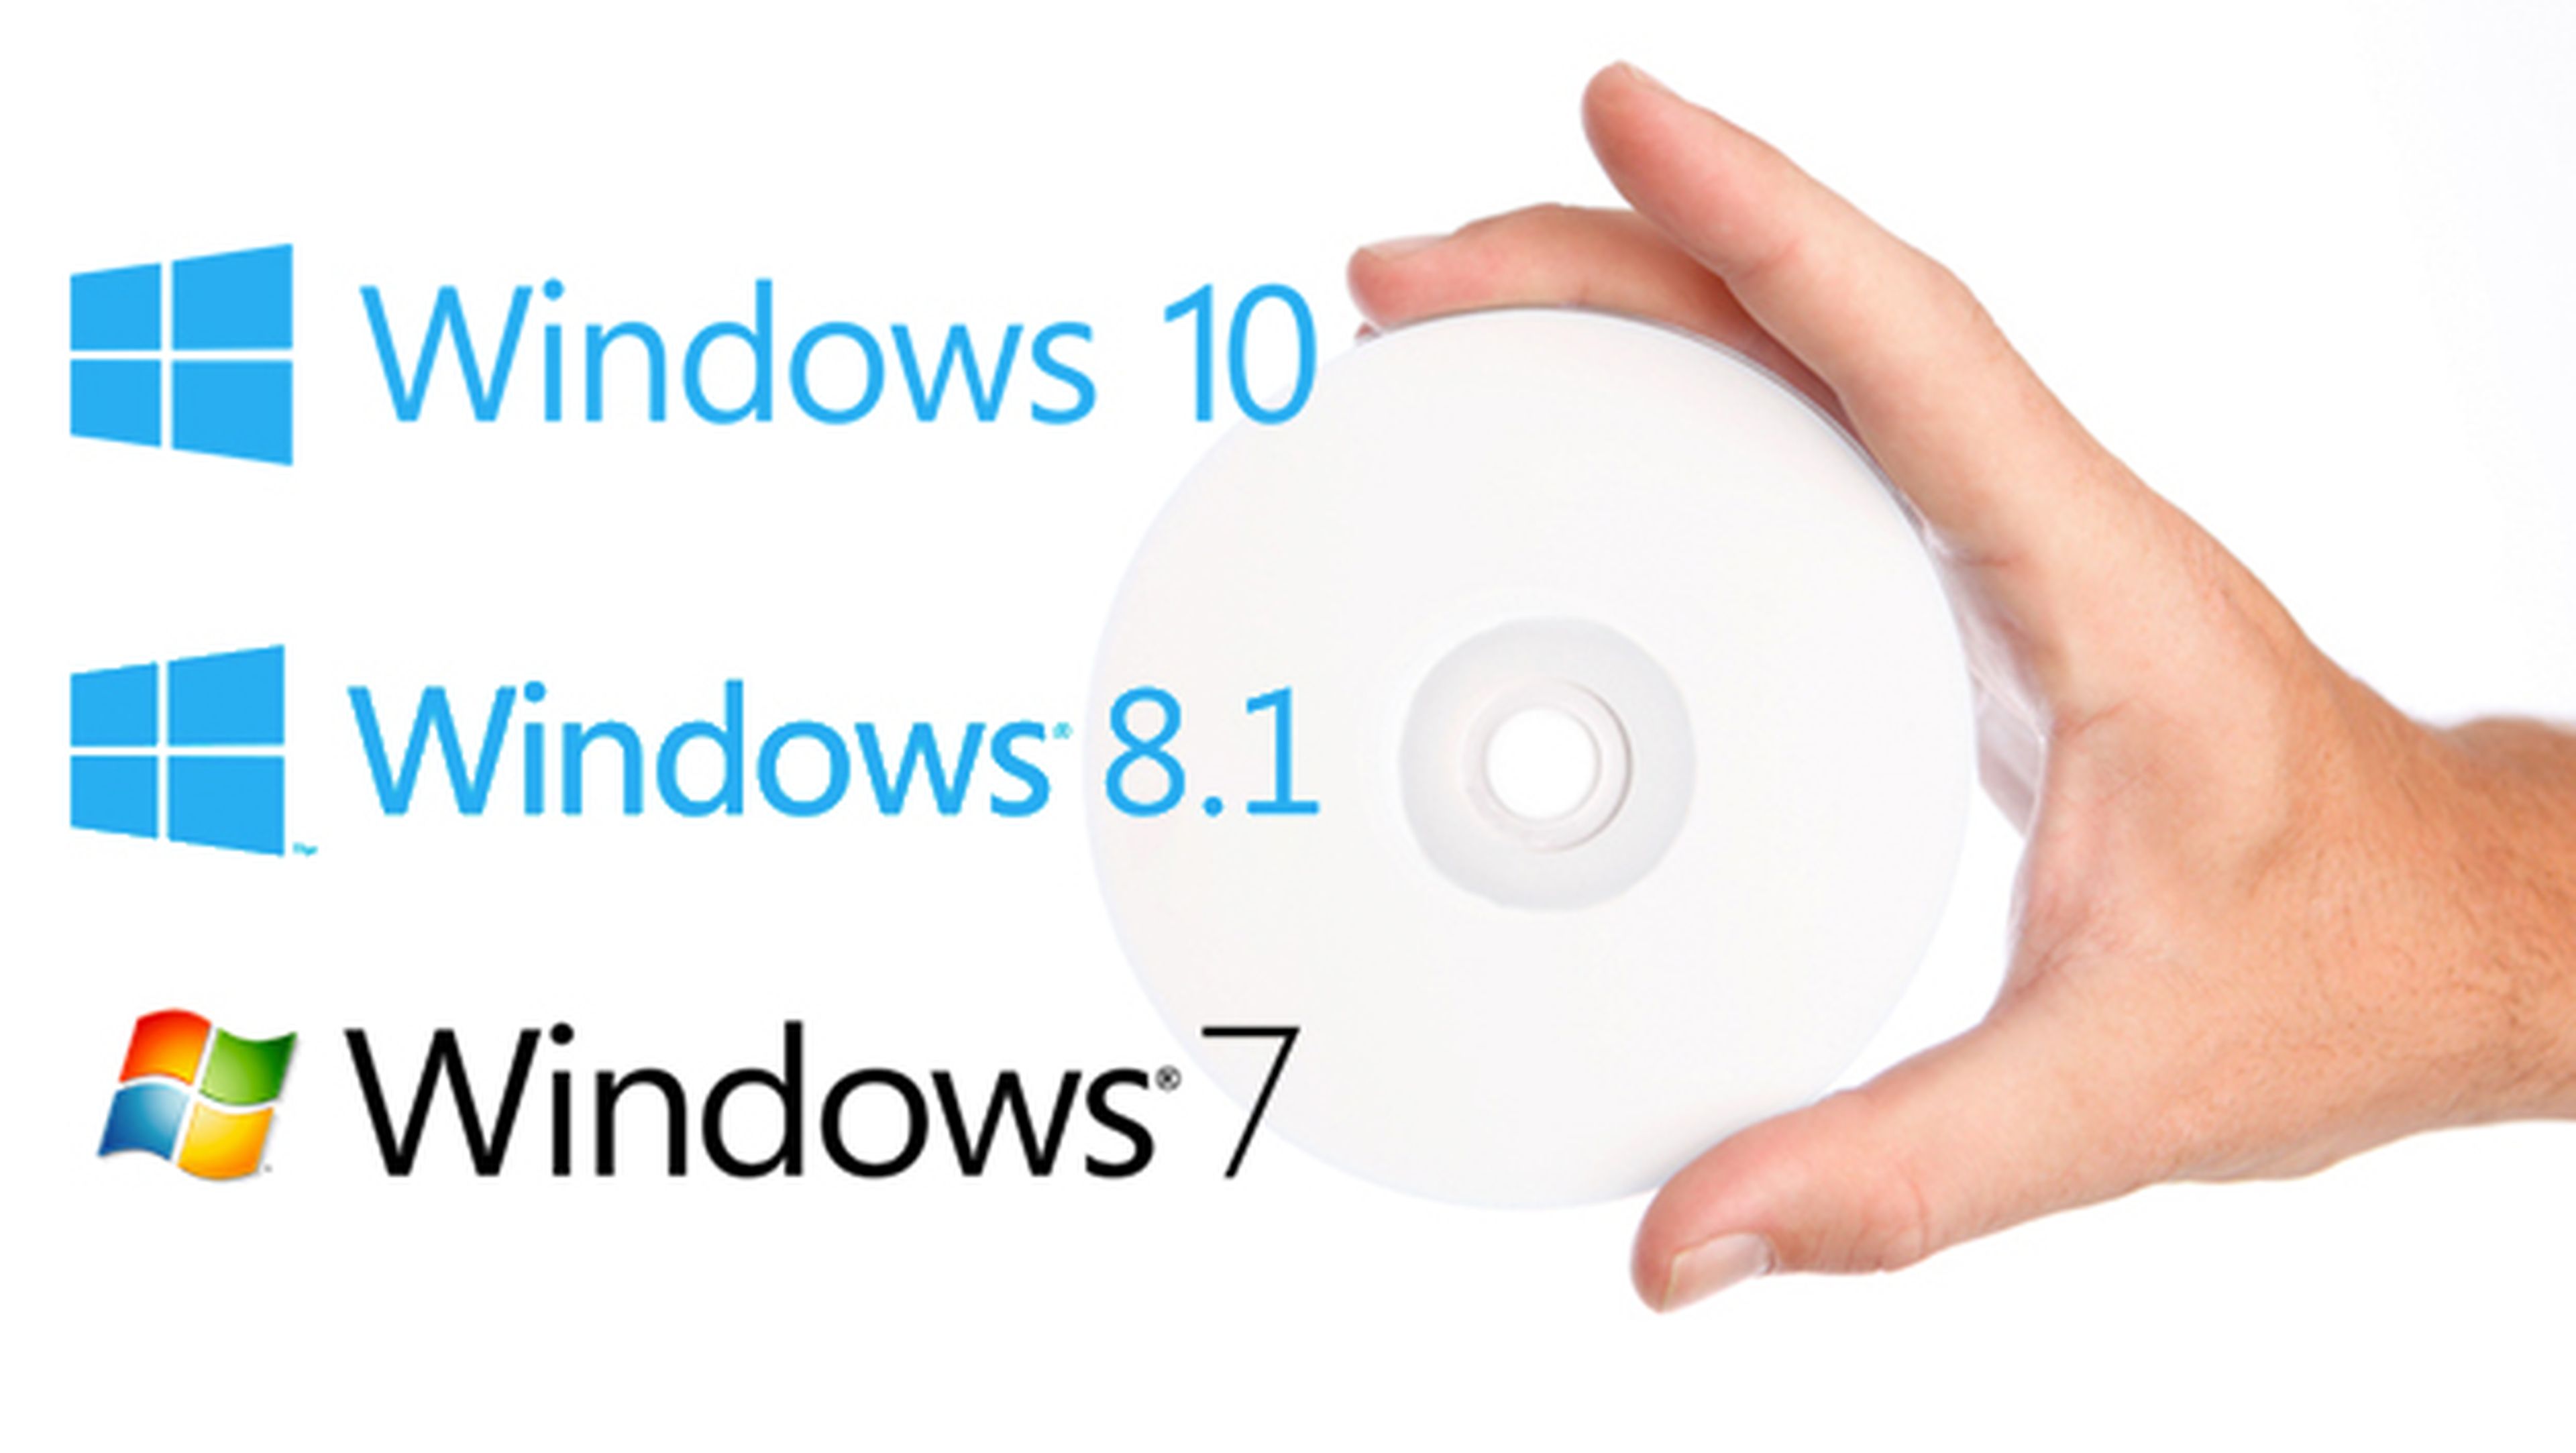 Cómo descargar gratis Windows 10, 8.1 y 7 en formato ISO